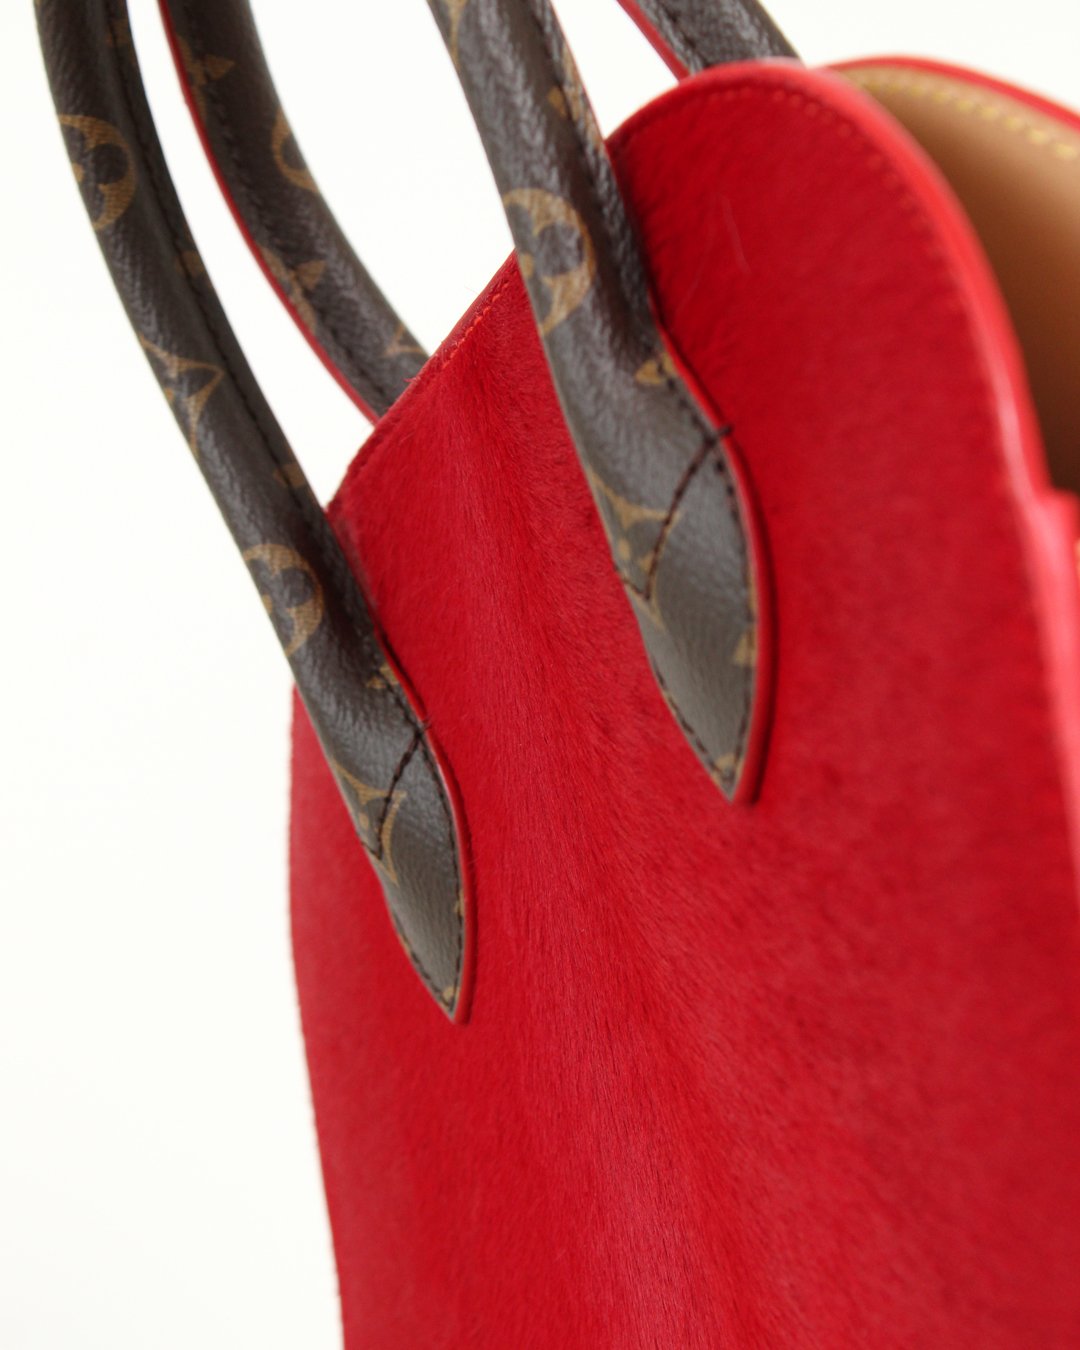 Review: LOUIS VUITTON x SUPREME Satchel Shoulder Bag In Detail